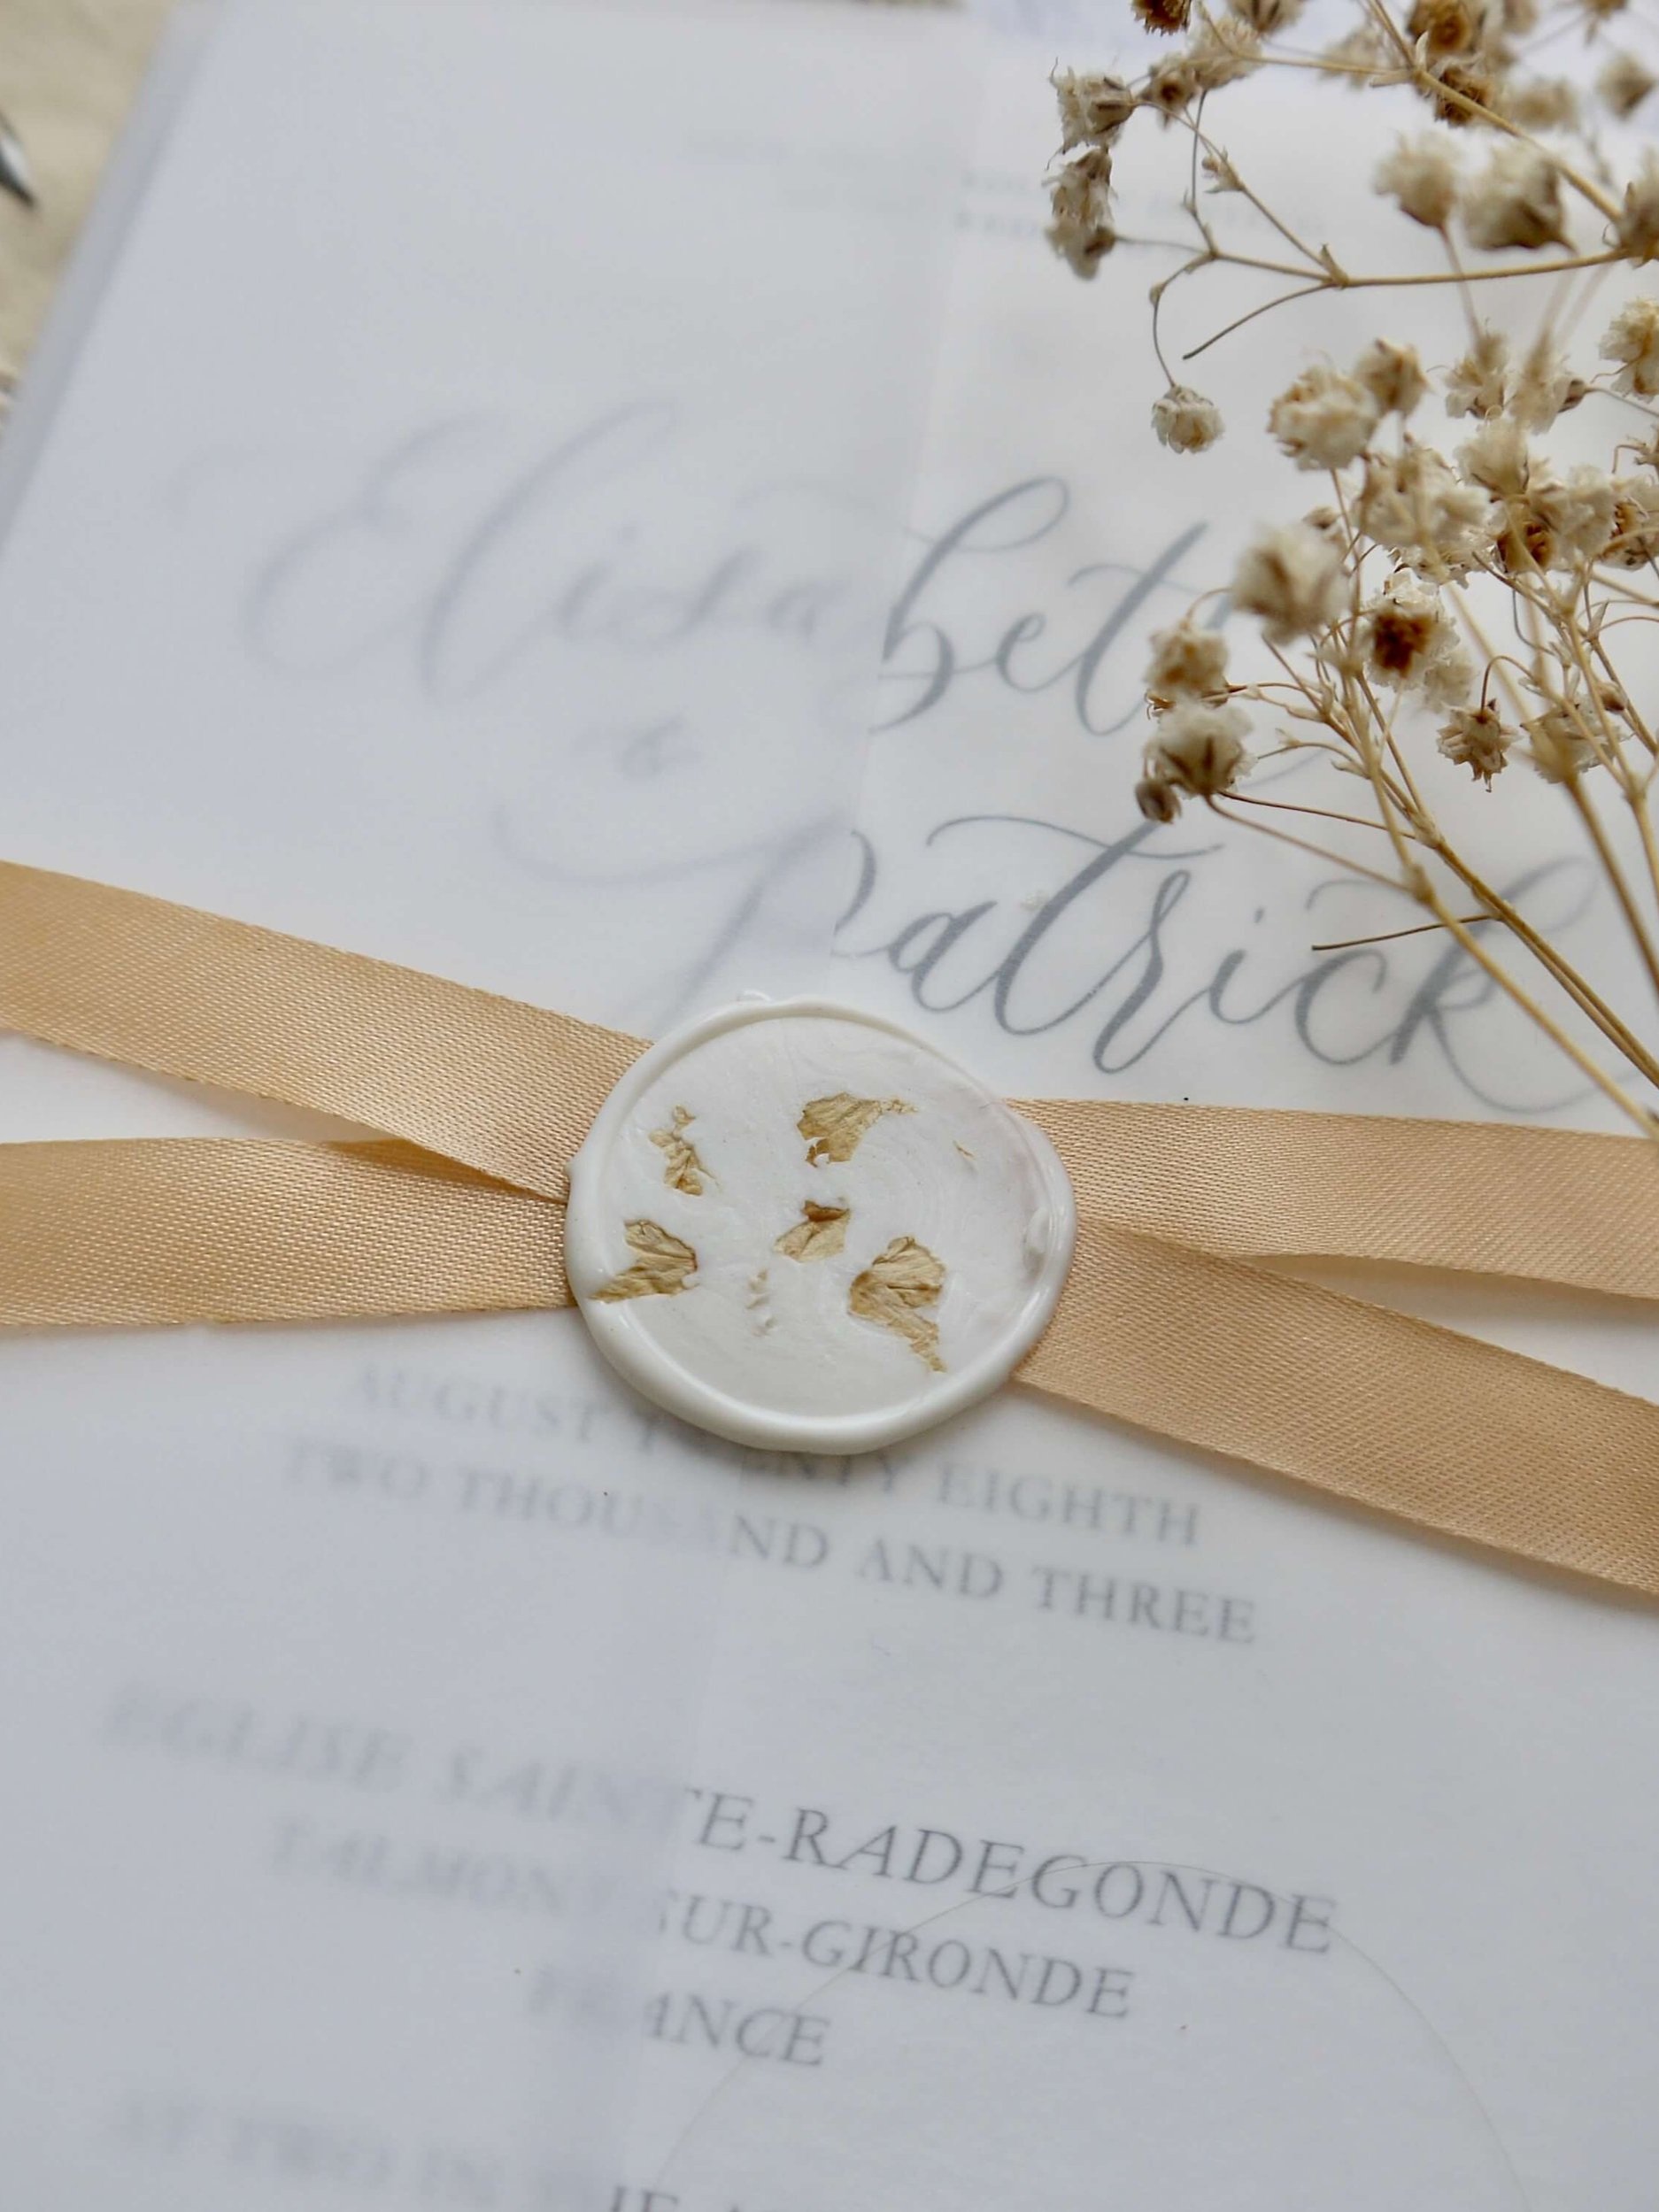 wax+seal+wedding+invites.jpg